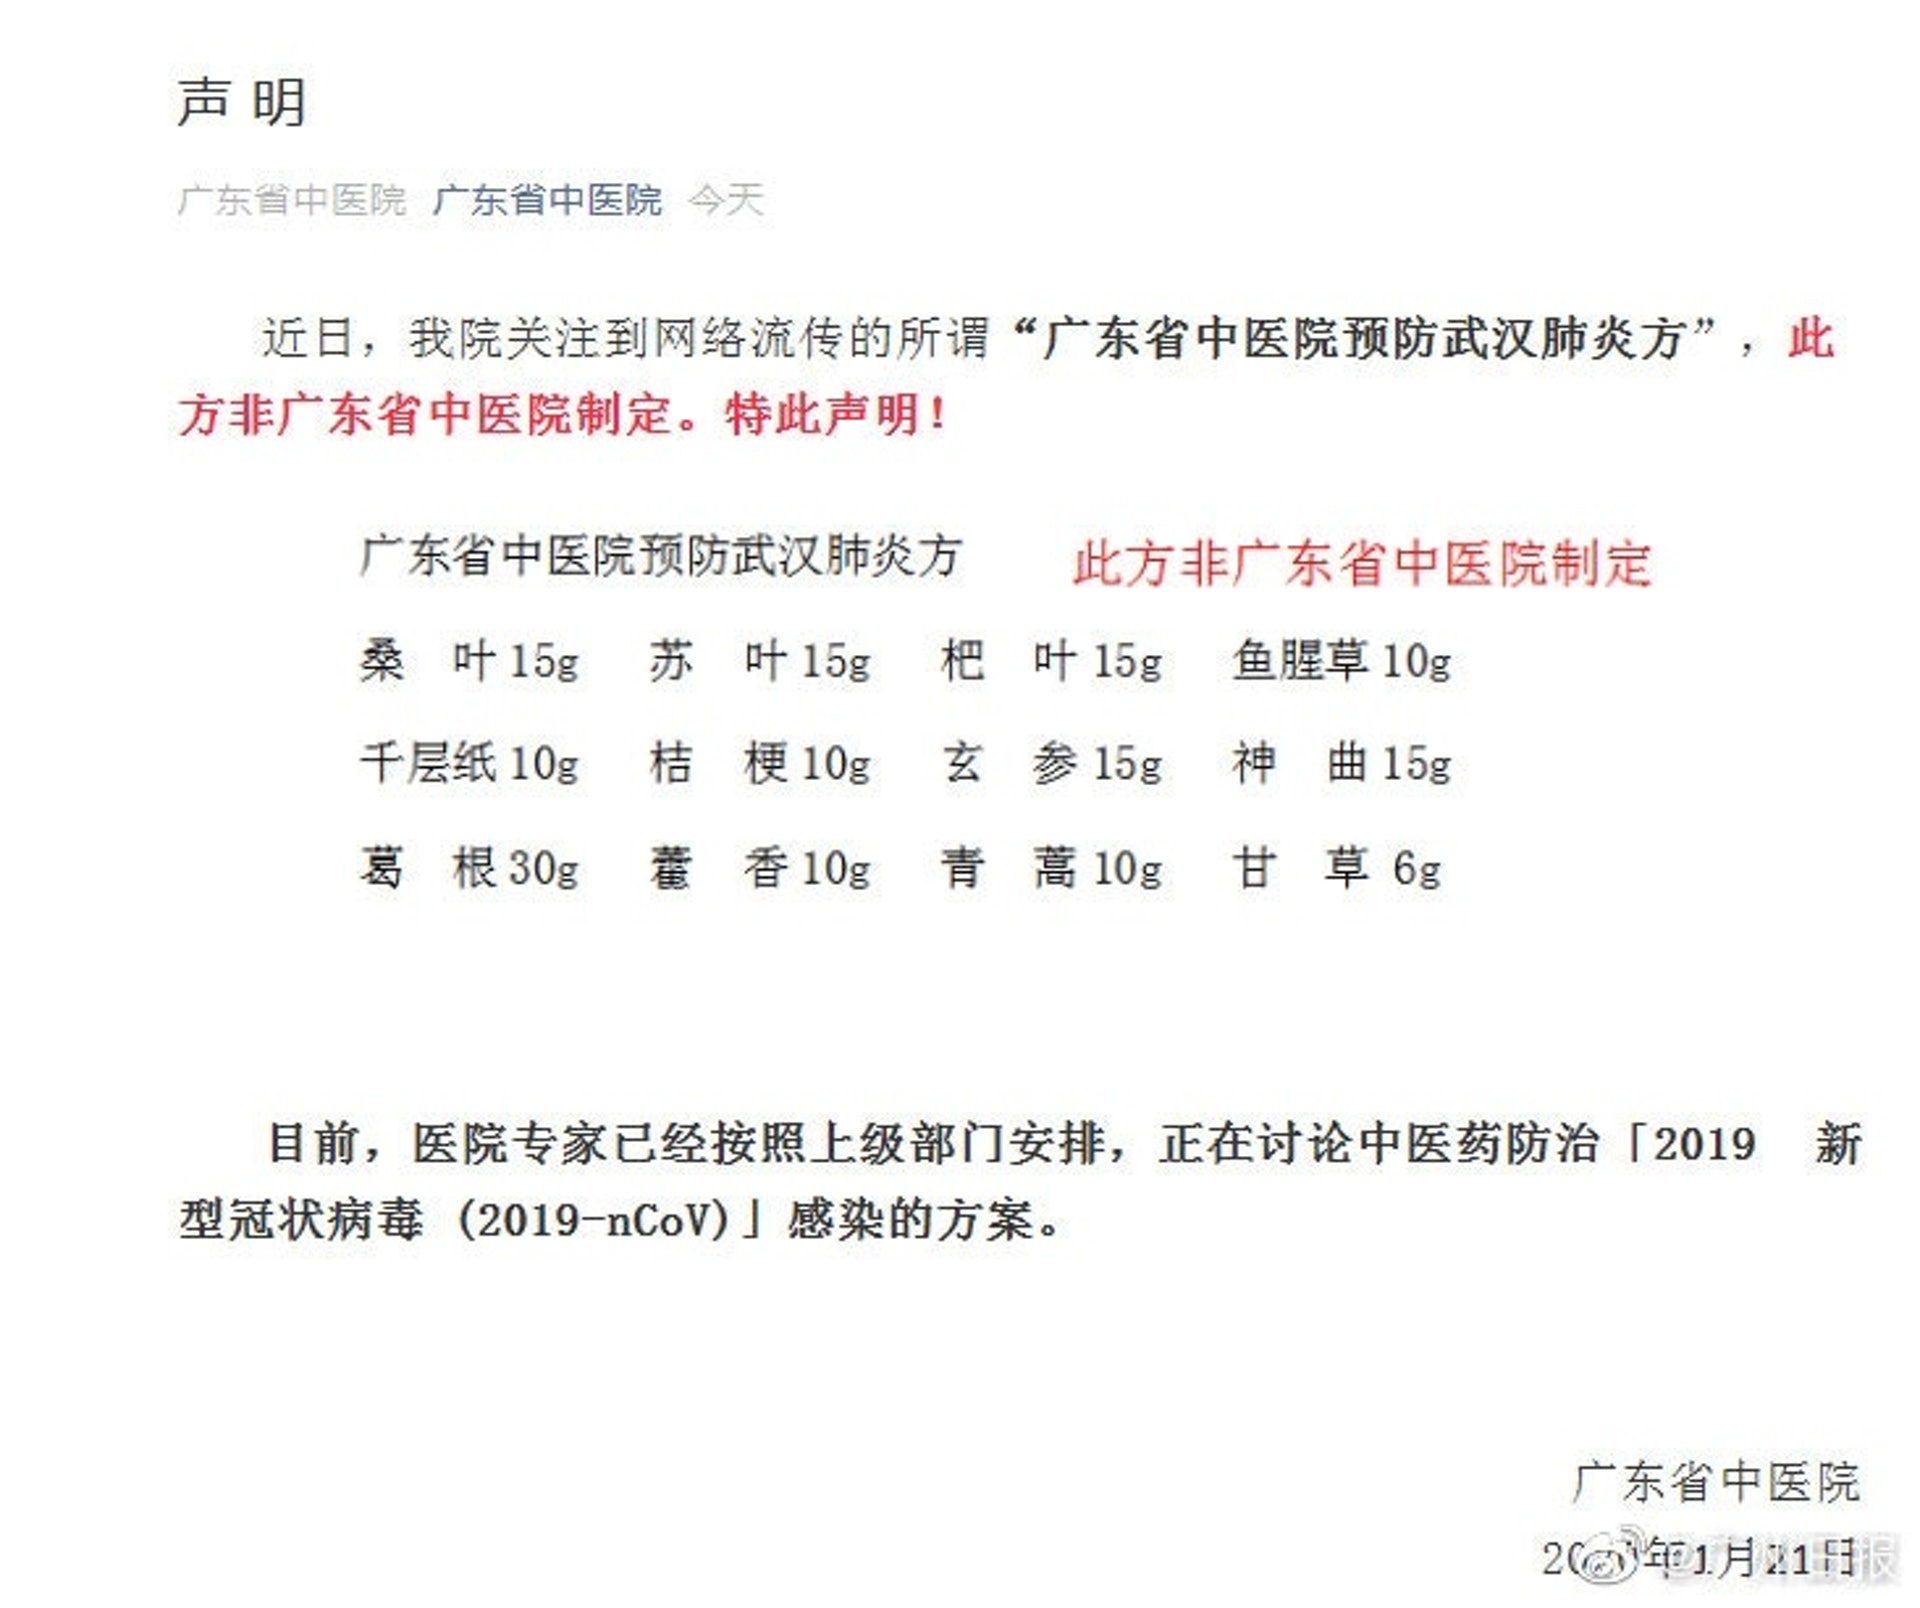 另一則謠傳預防武漢肺炎的藥方，廣東省中醫院在官方微信公眾號發聲稱闢謠。（微信）